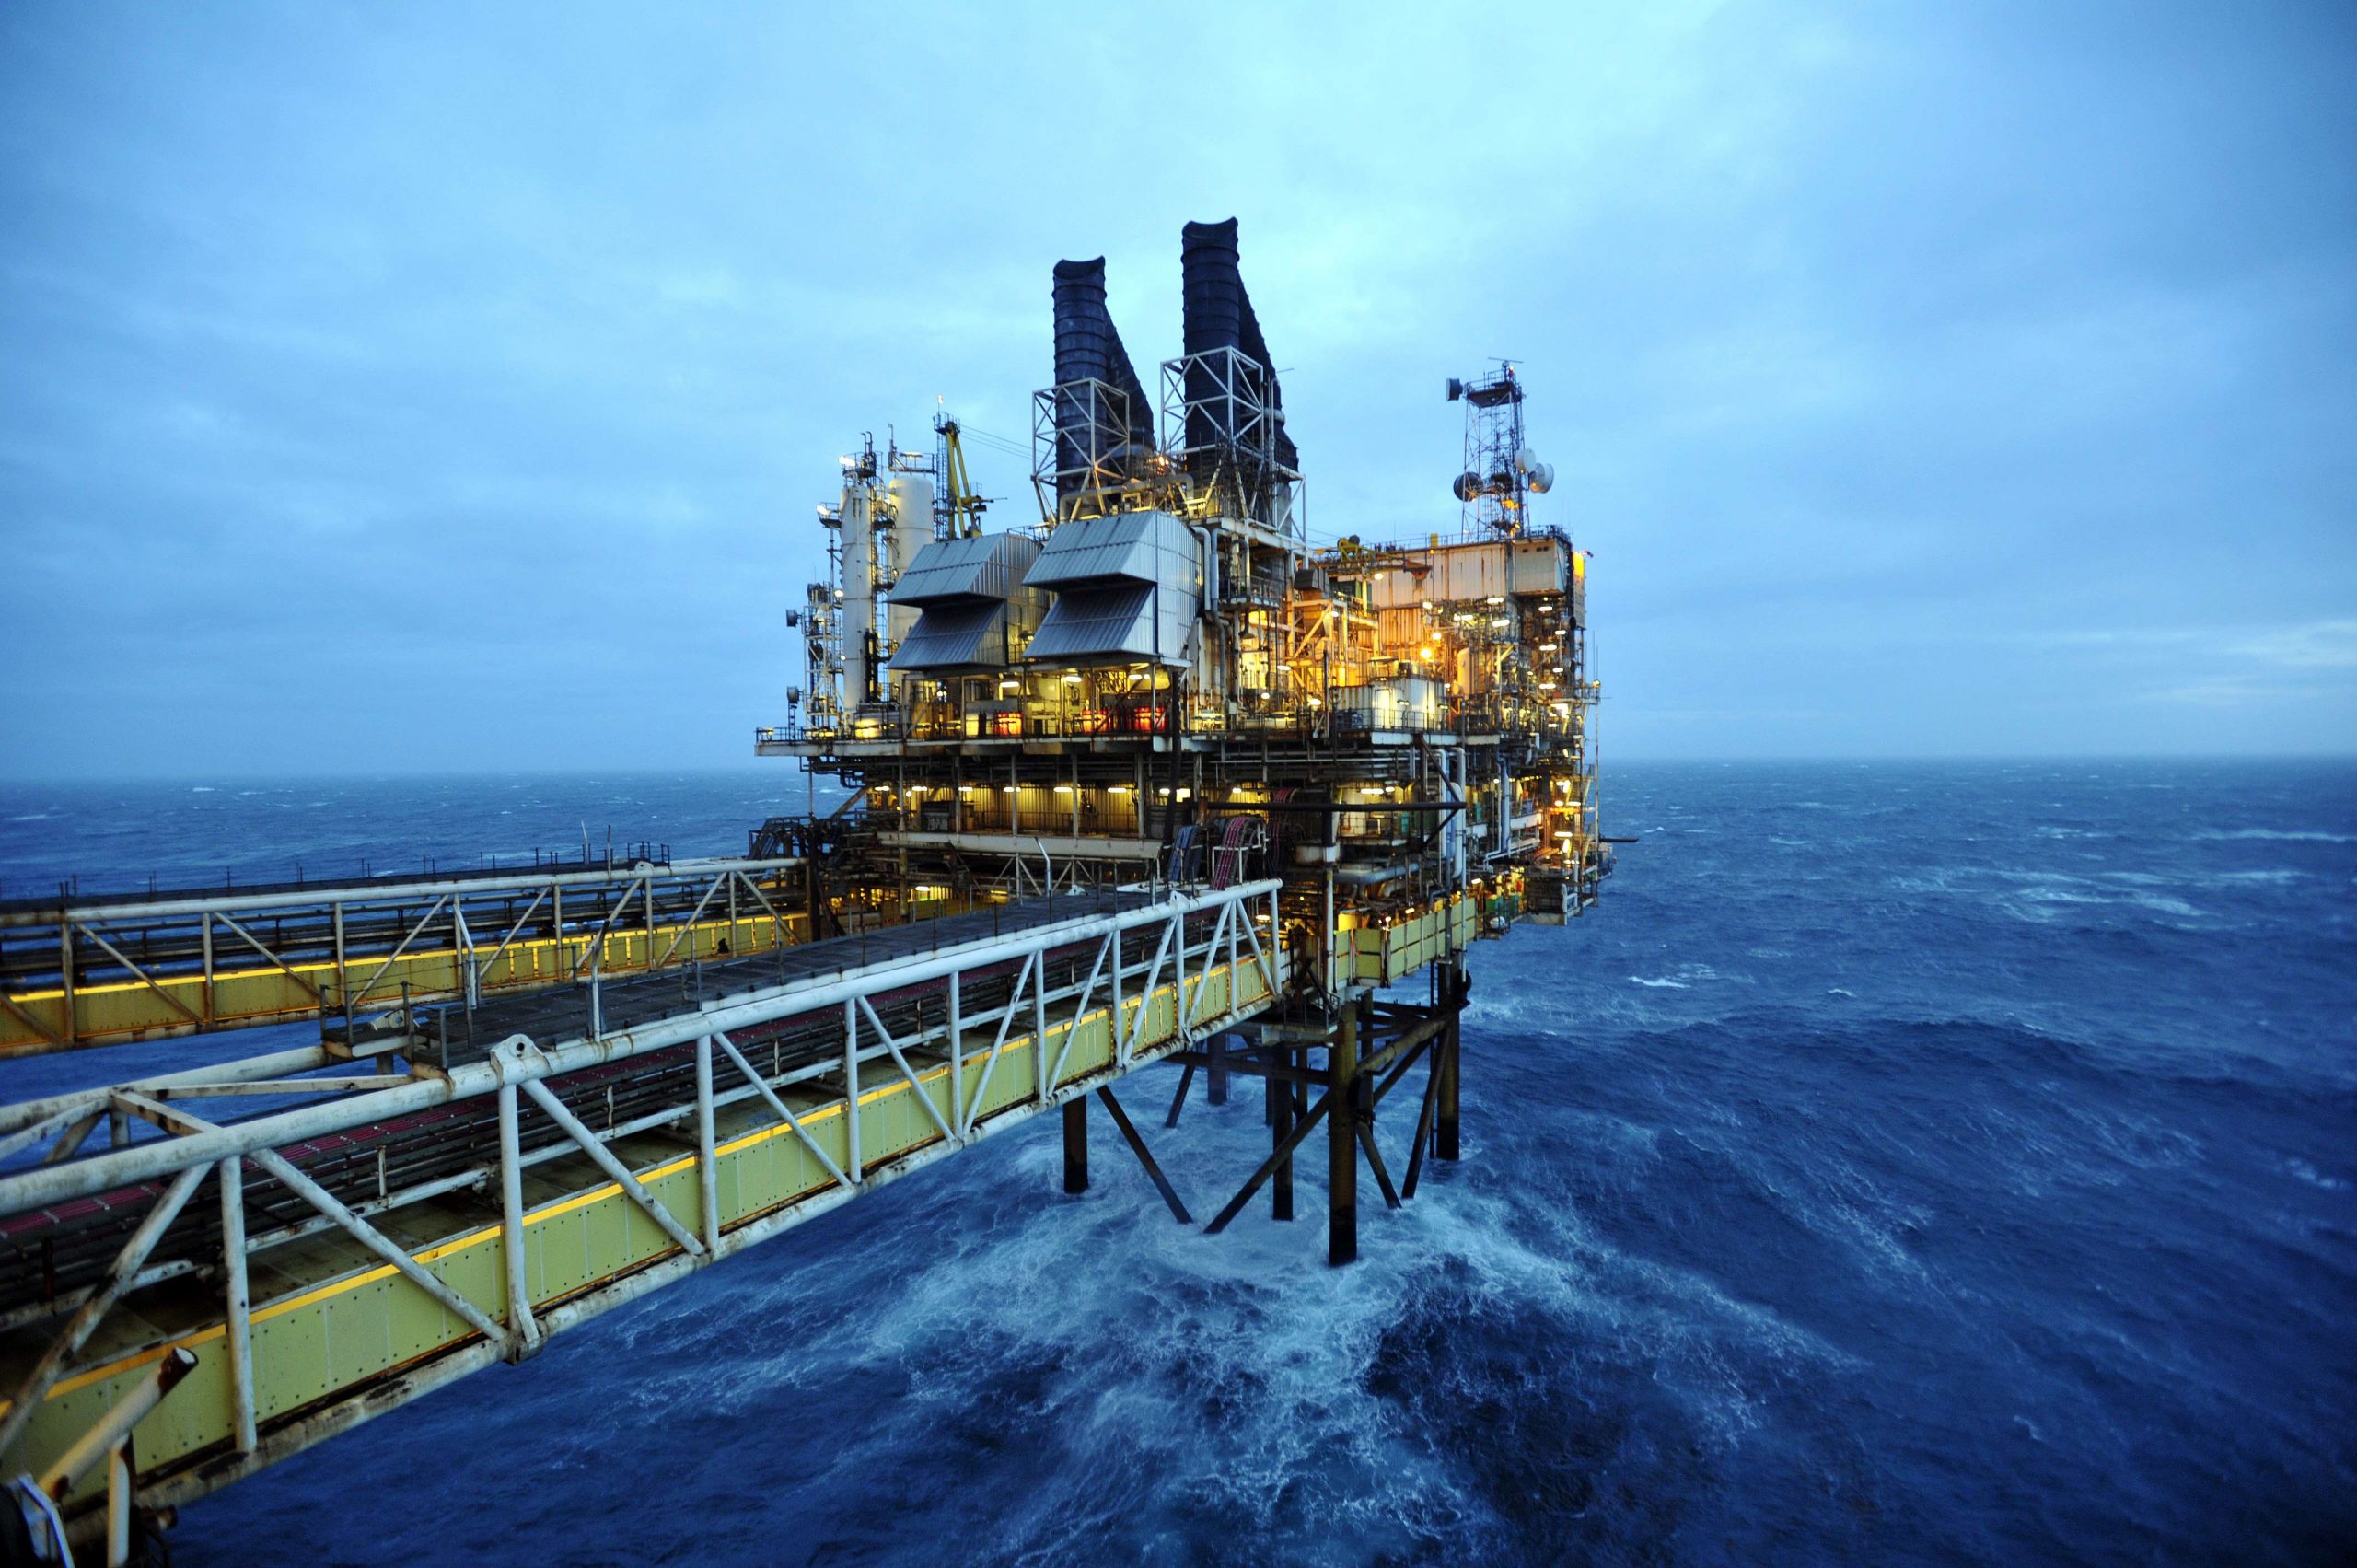  Matière première : présence d’hydrocarbure dans les blocs pétroliers offshore CI-504, CI-526, CI-706 et CI-708 